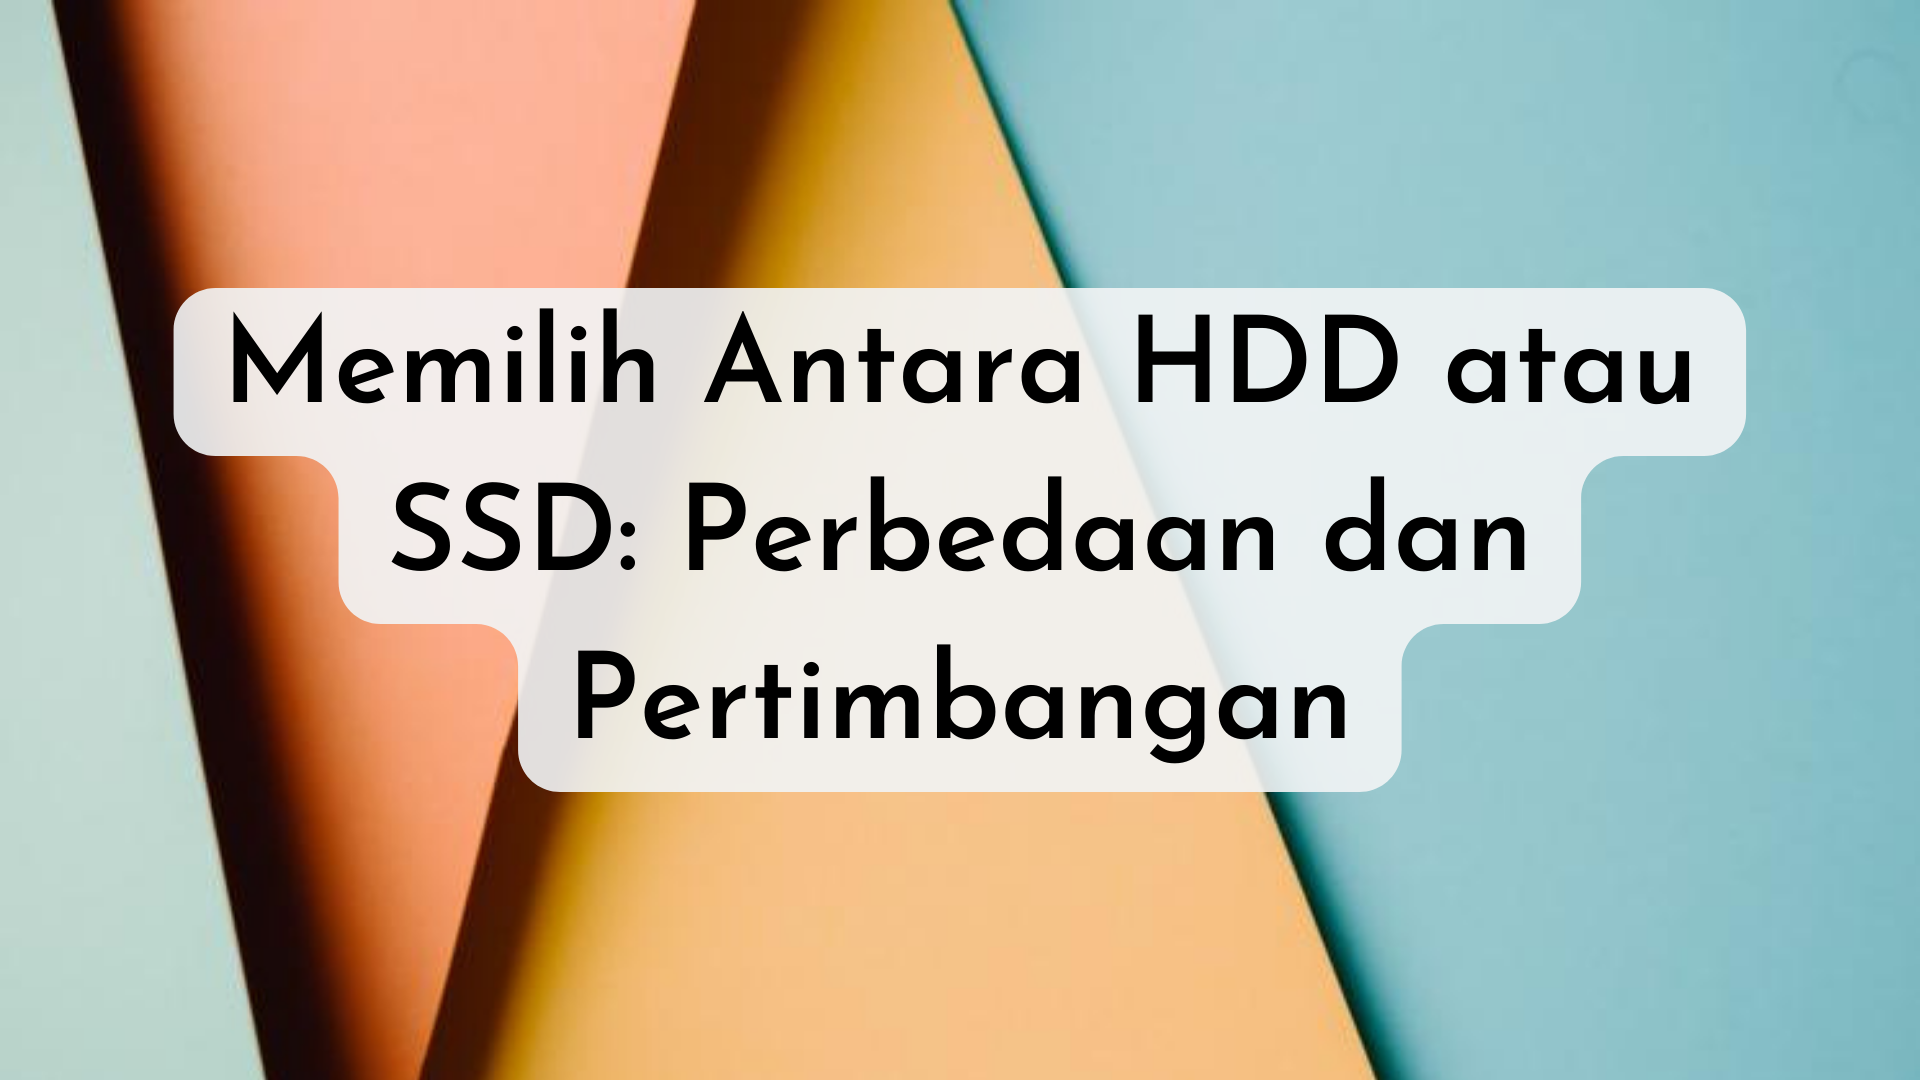 Memilih Antara HDD atau SSD: Perbedaan dan Pertimbangan